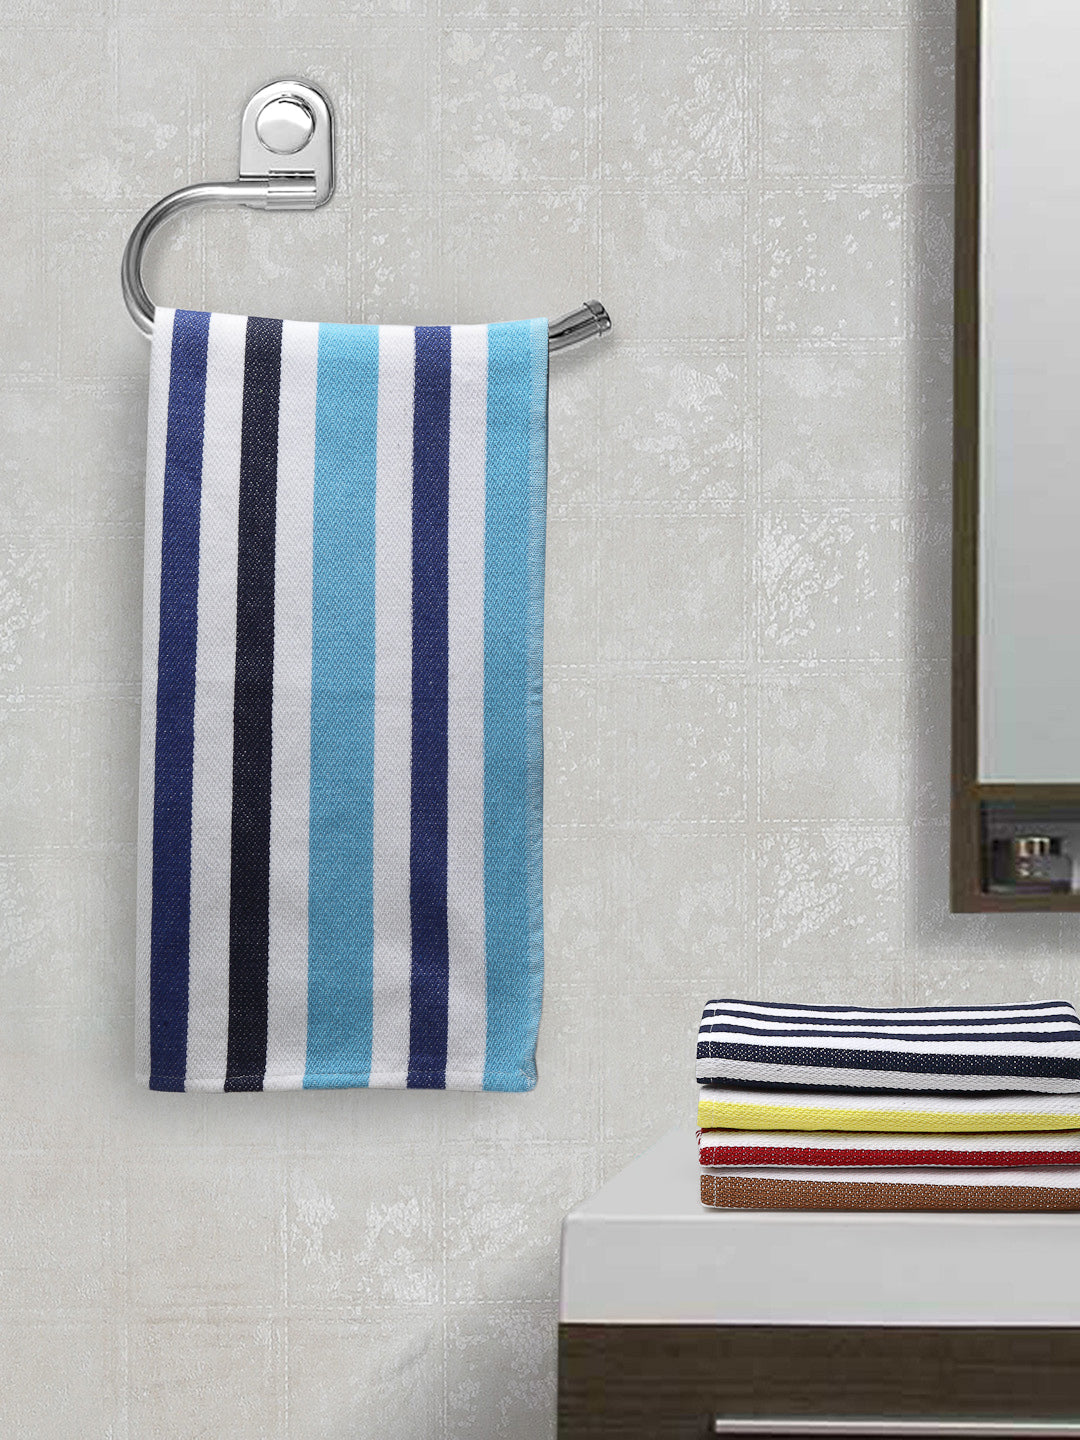 Arrabi Multi Stripes Handwoven Cotton Hand Towel (Set of 5) (85 X 35 cm)